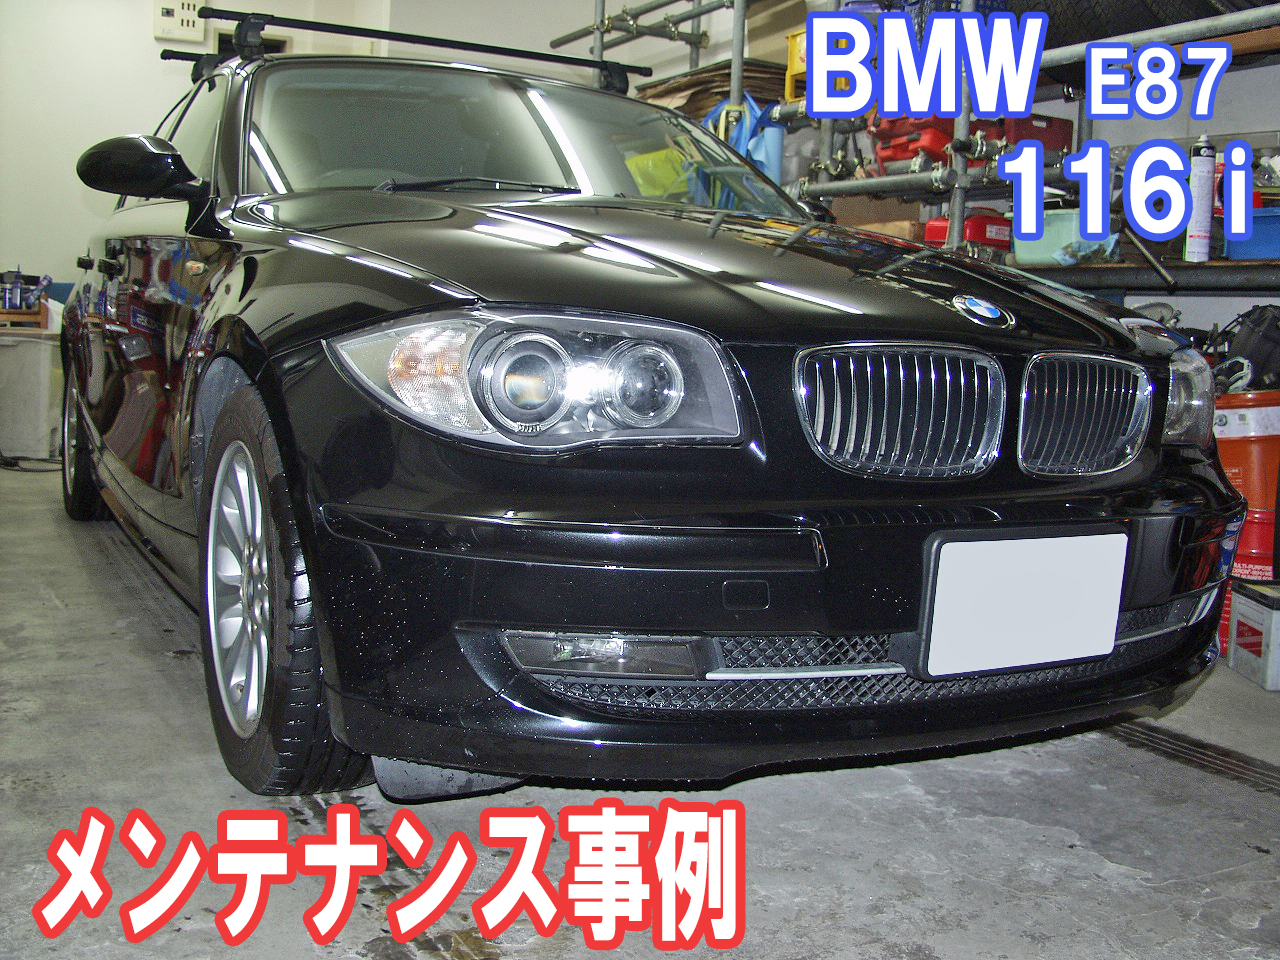 BMW E87 116iのメンテナンス事例をご紹介します。